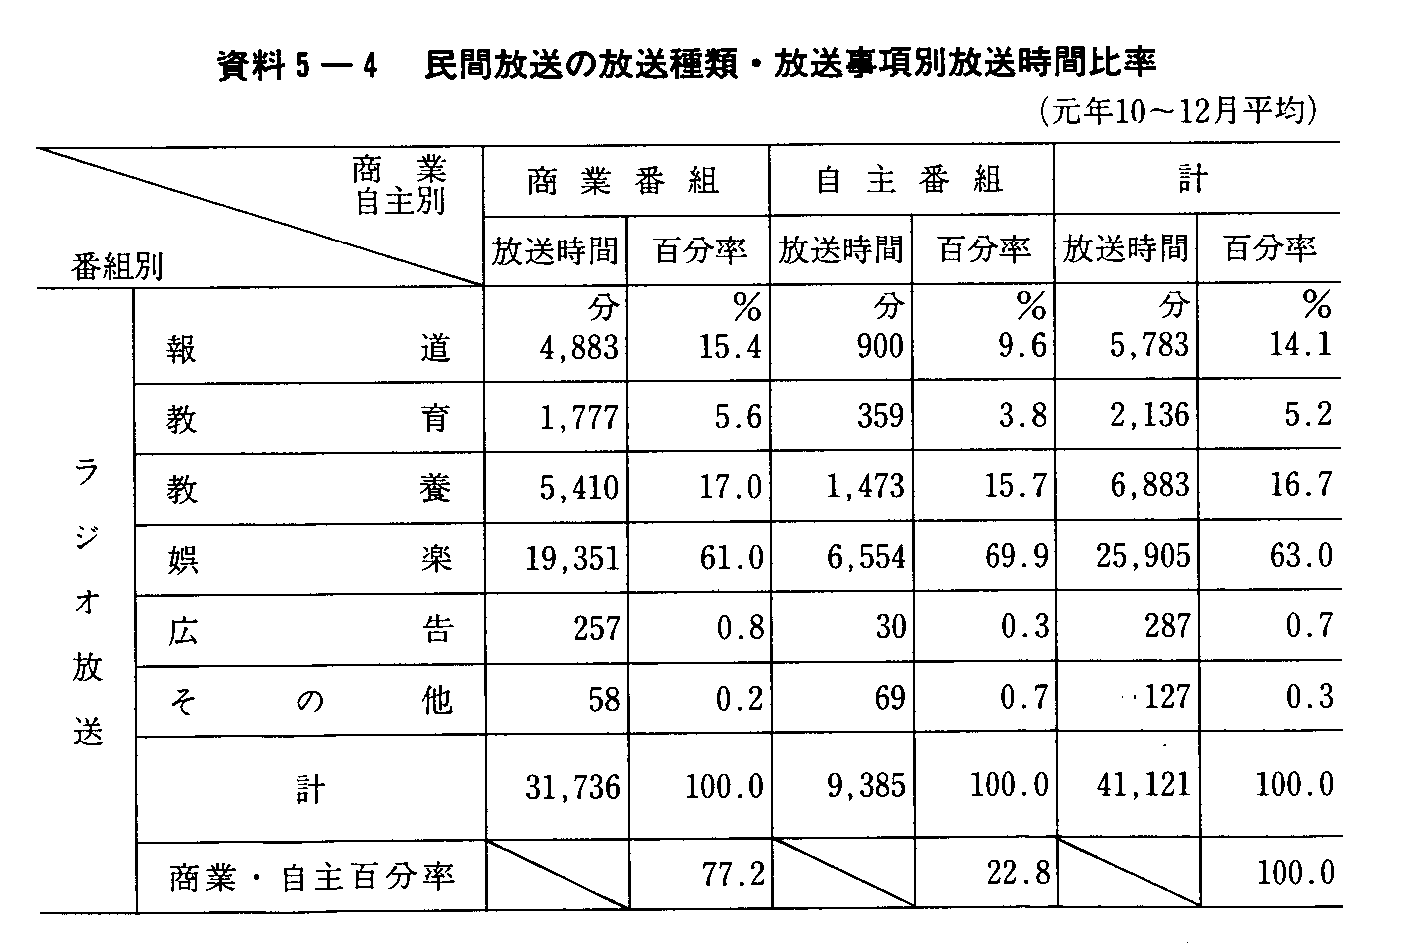 5-4 ԕ̕ށEʕԔ䗦(N10`12) (1)